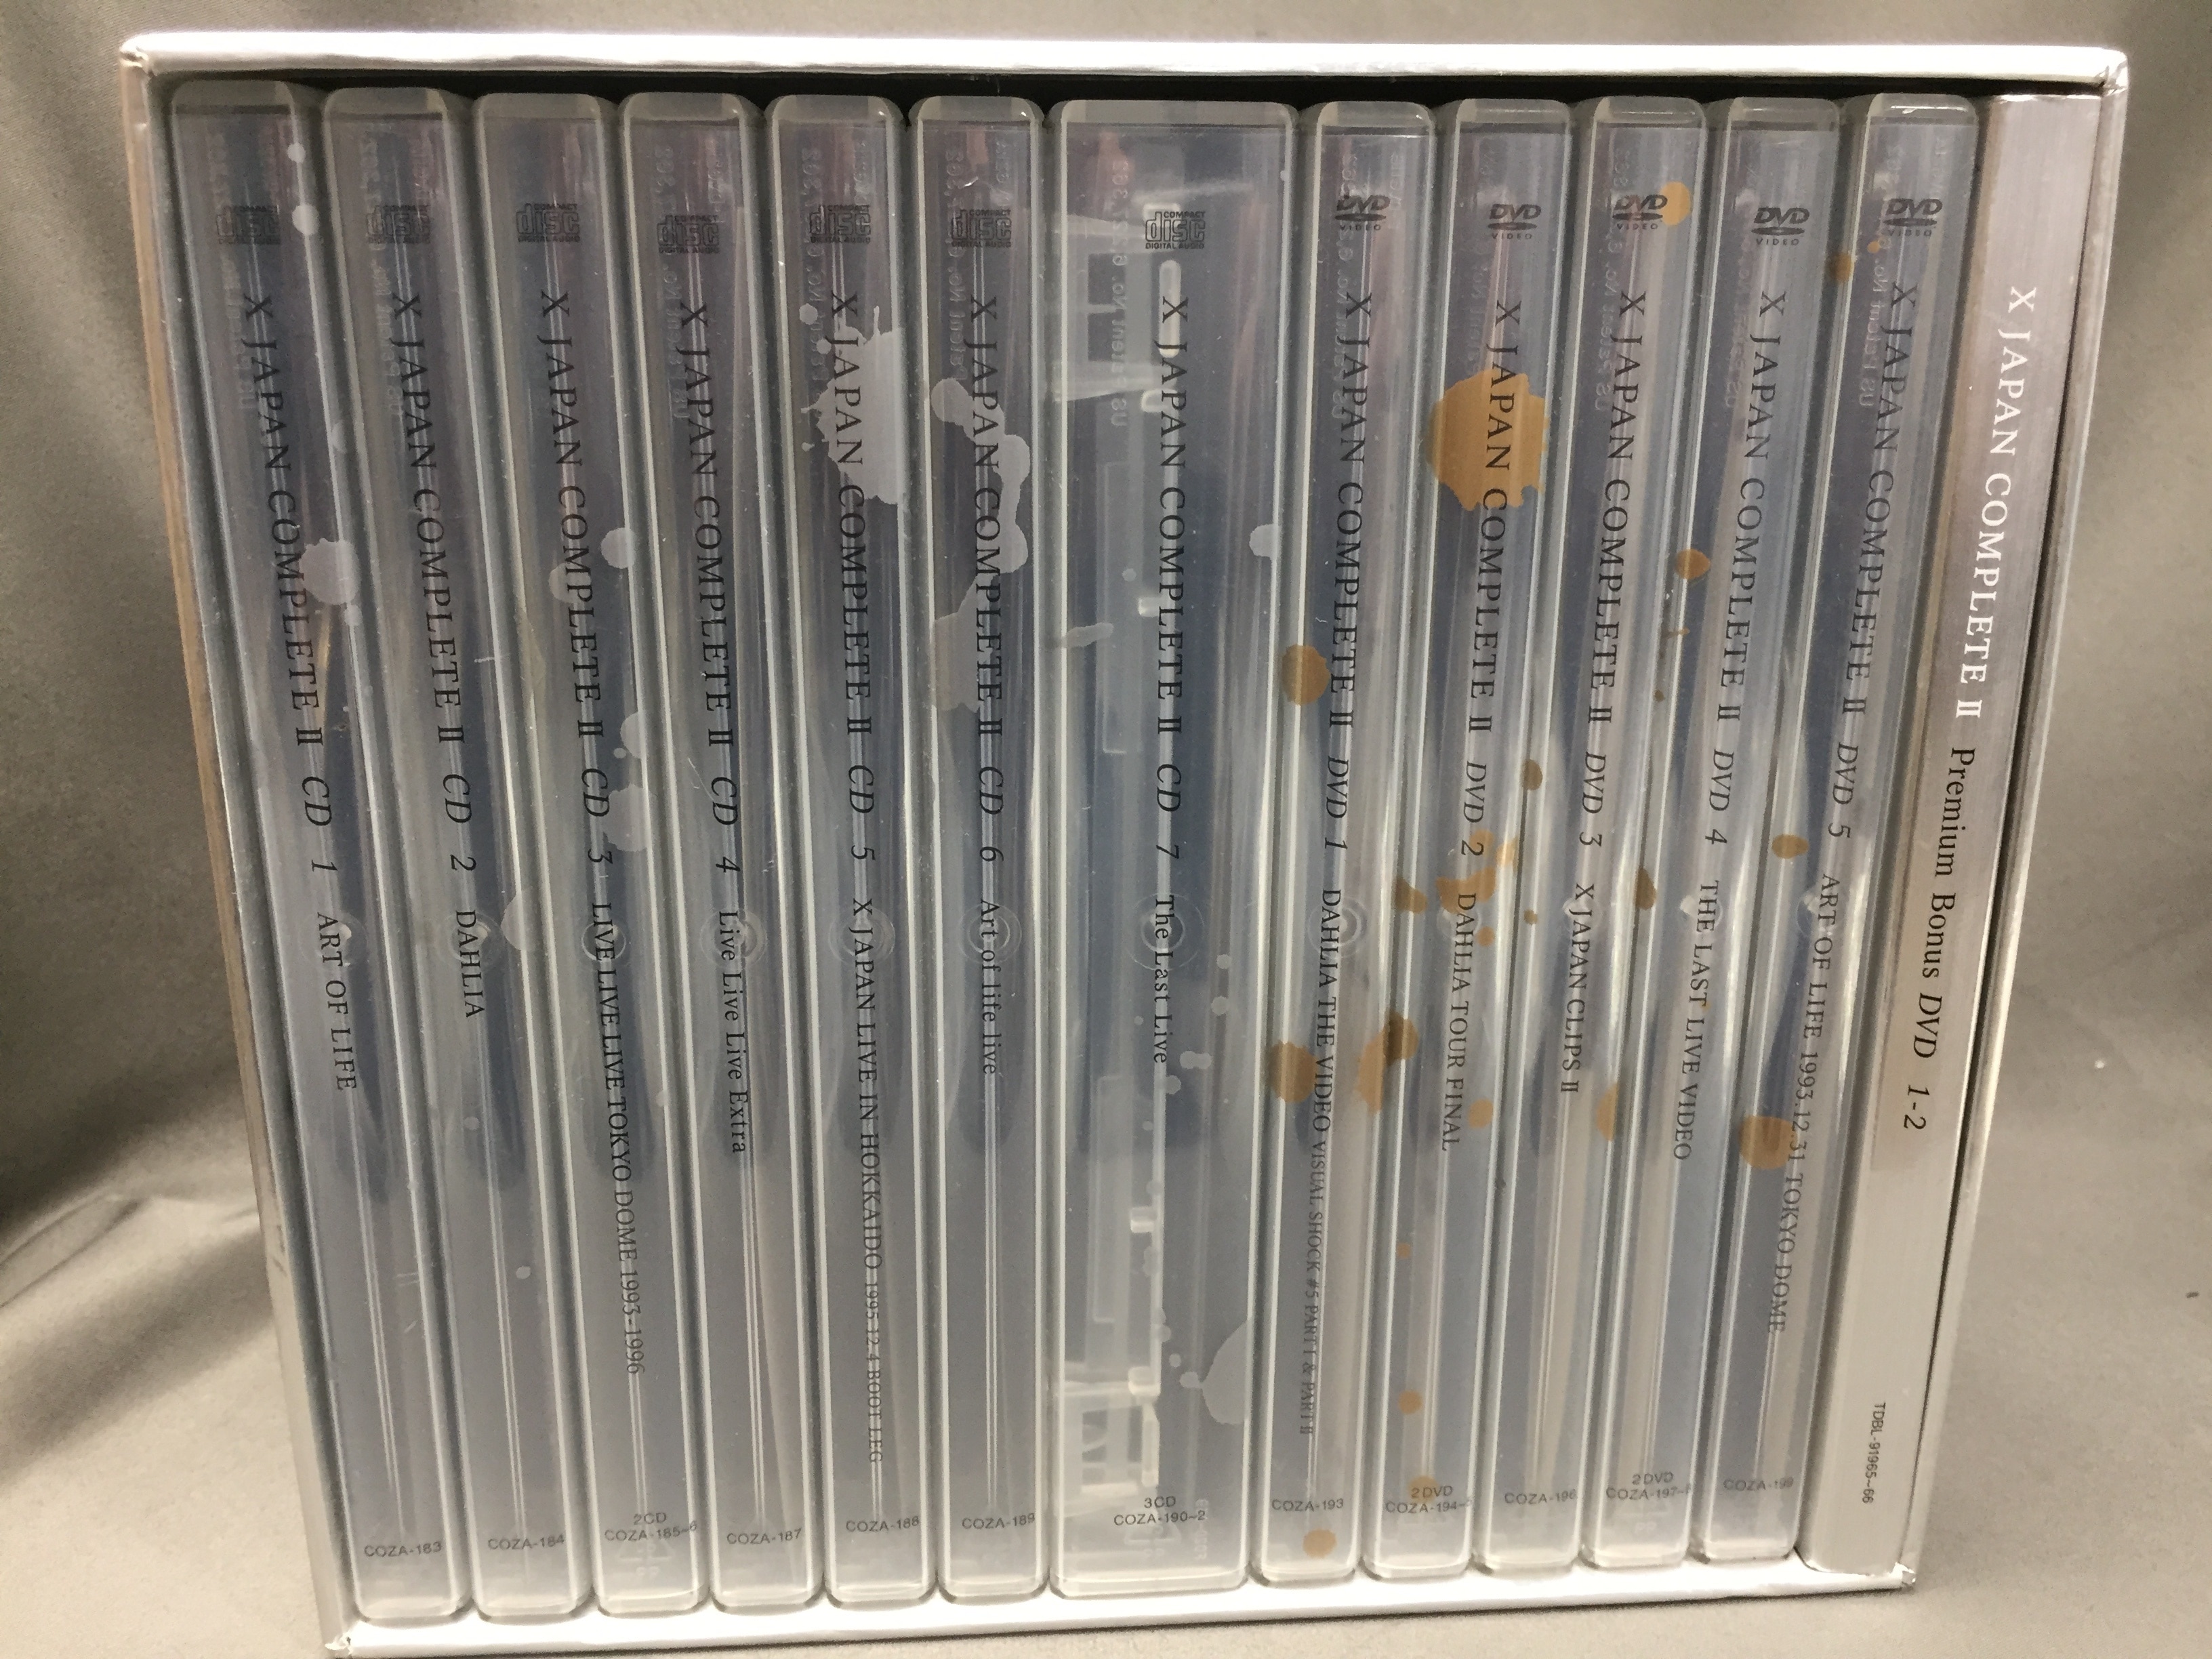 X JAPAN CD+DVD-BOX X JAPAN COMPLETEⅡ | ありある | まんだらけ 